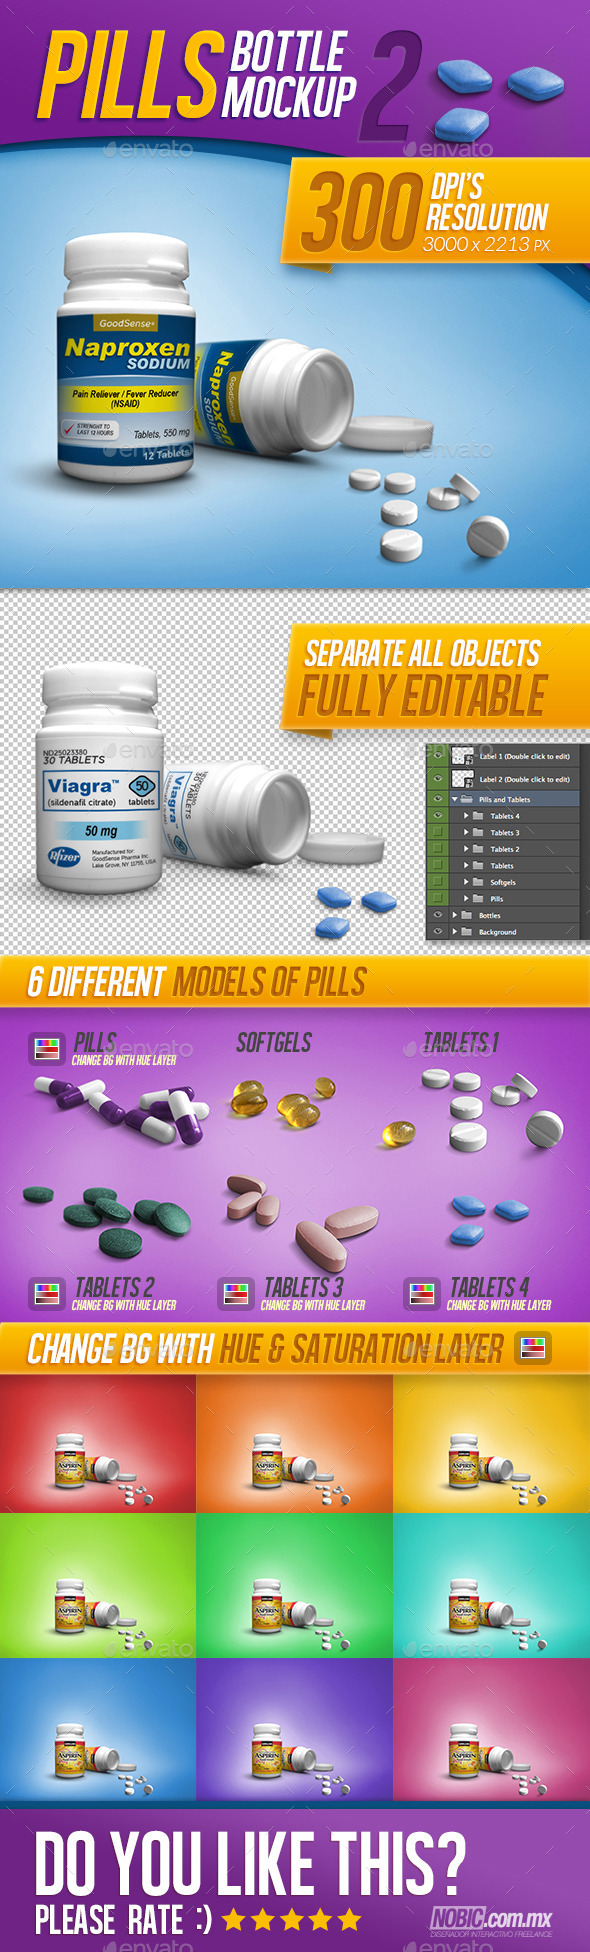 Medicine, Tablets, and Pills Bottle Mockup